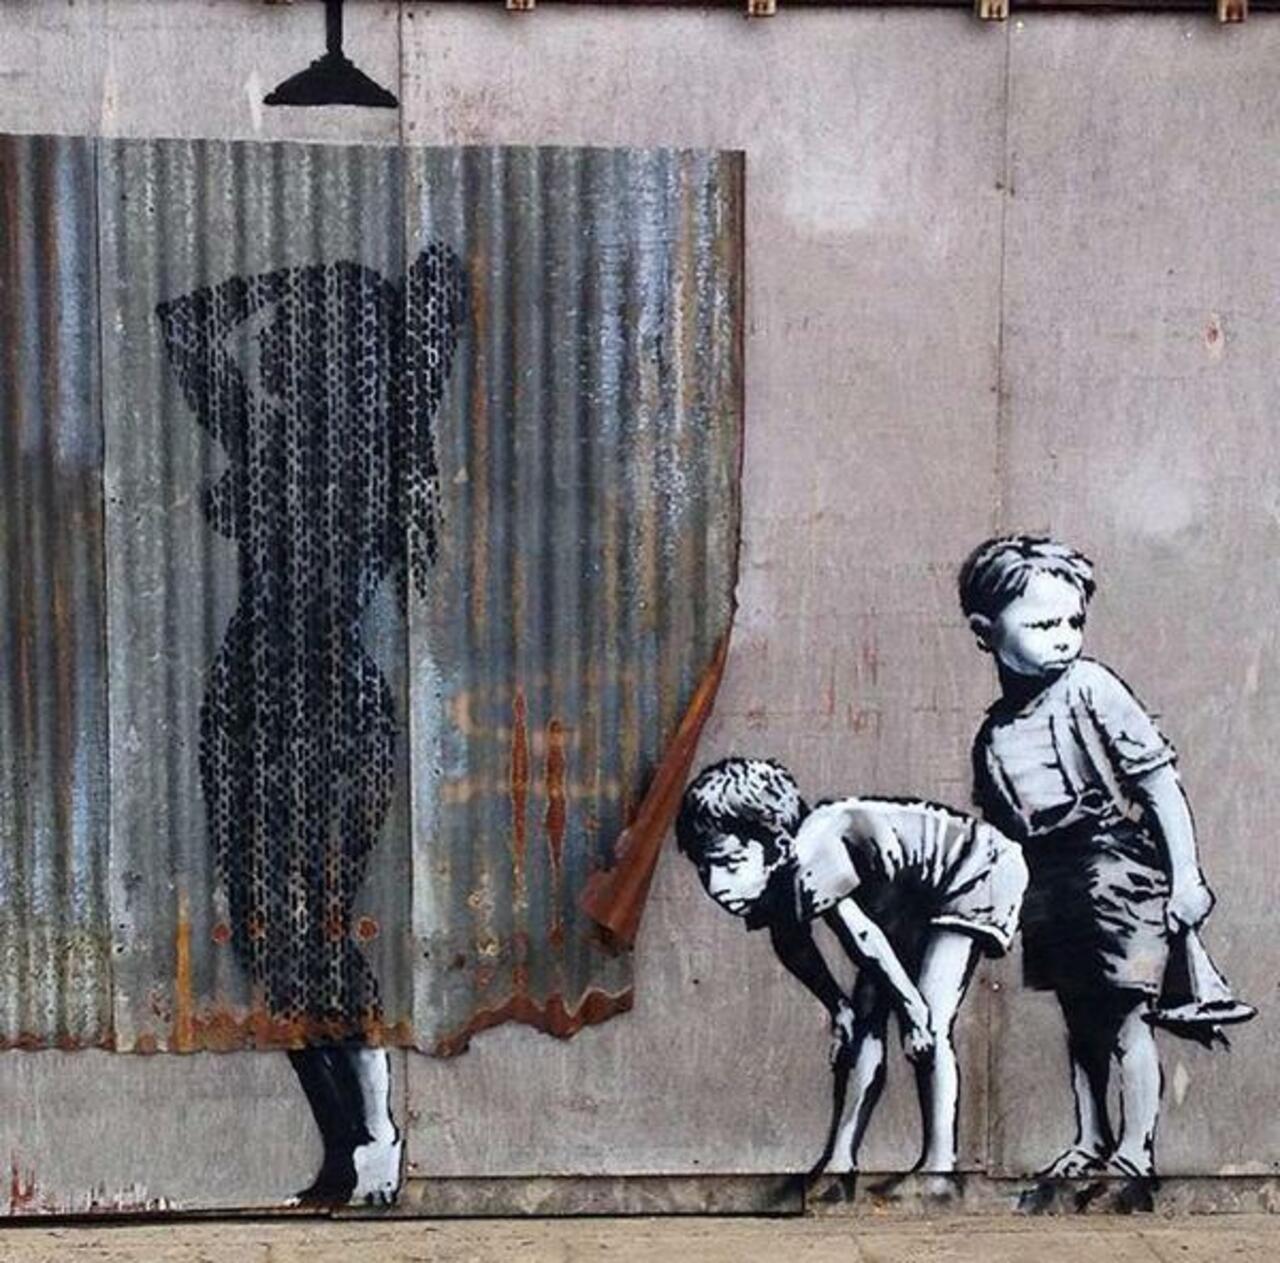 "@PlayTheMove:New Street Art in Dismaland by Banksy
#streetart #banksy #art #graffiti http://goo.gl/Kqrq6S http://t.co/UBf7t4UjRF"